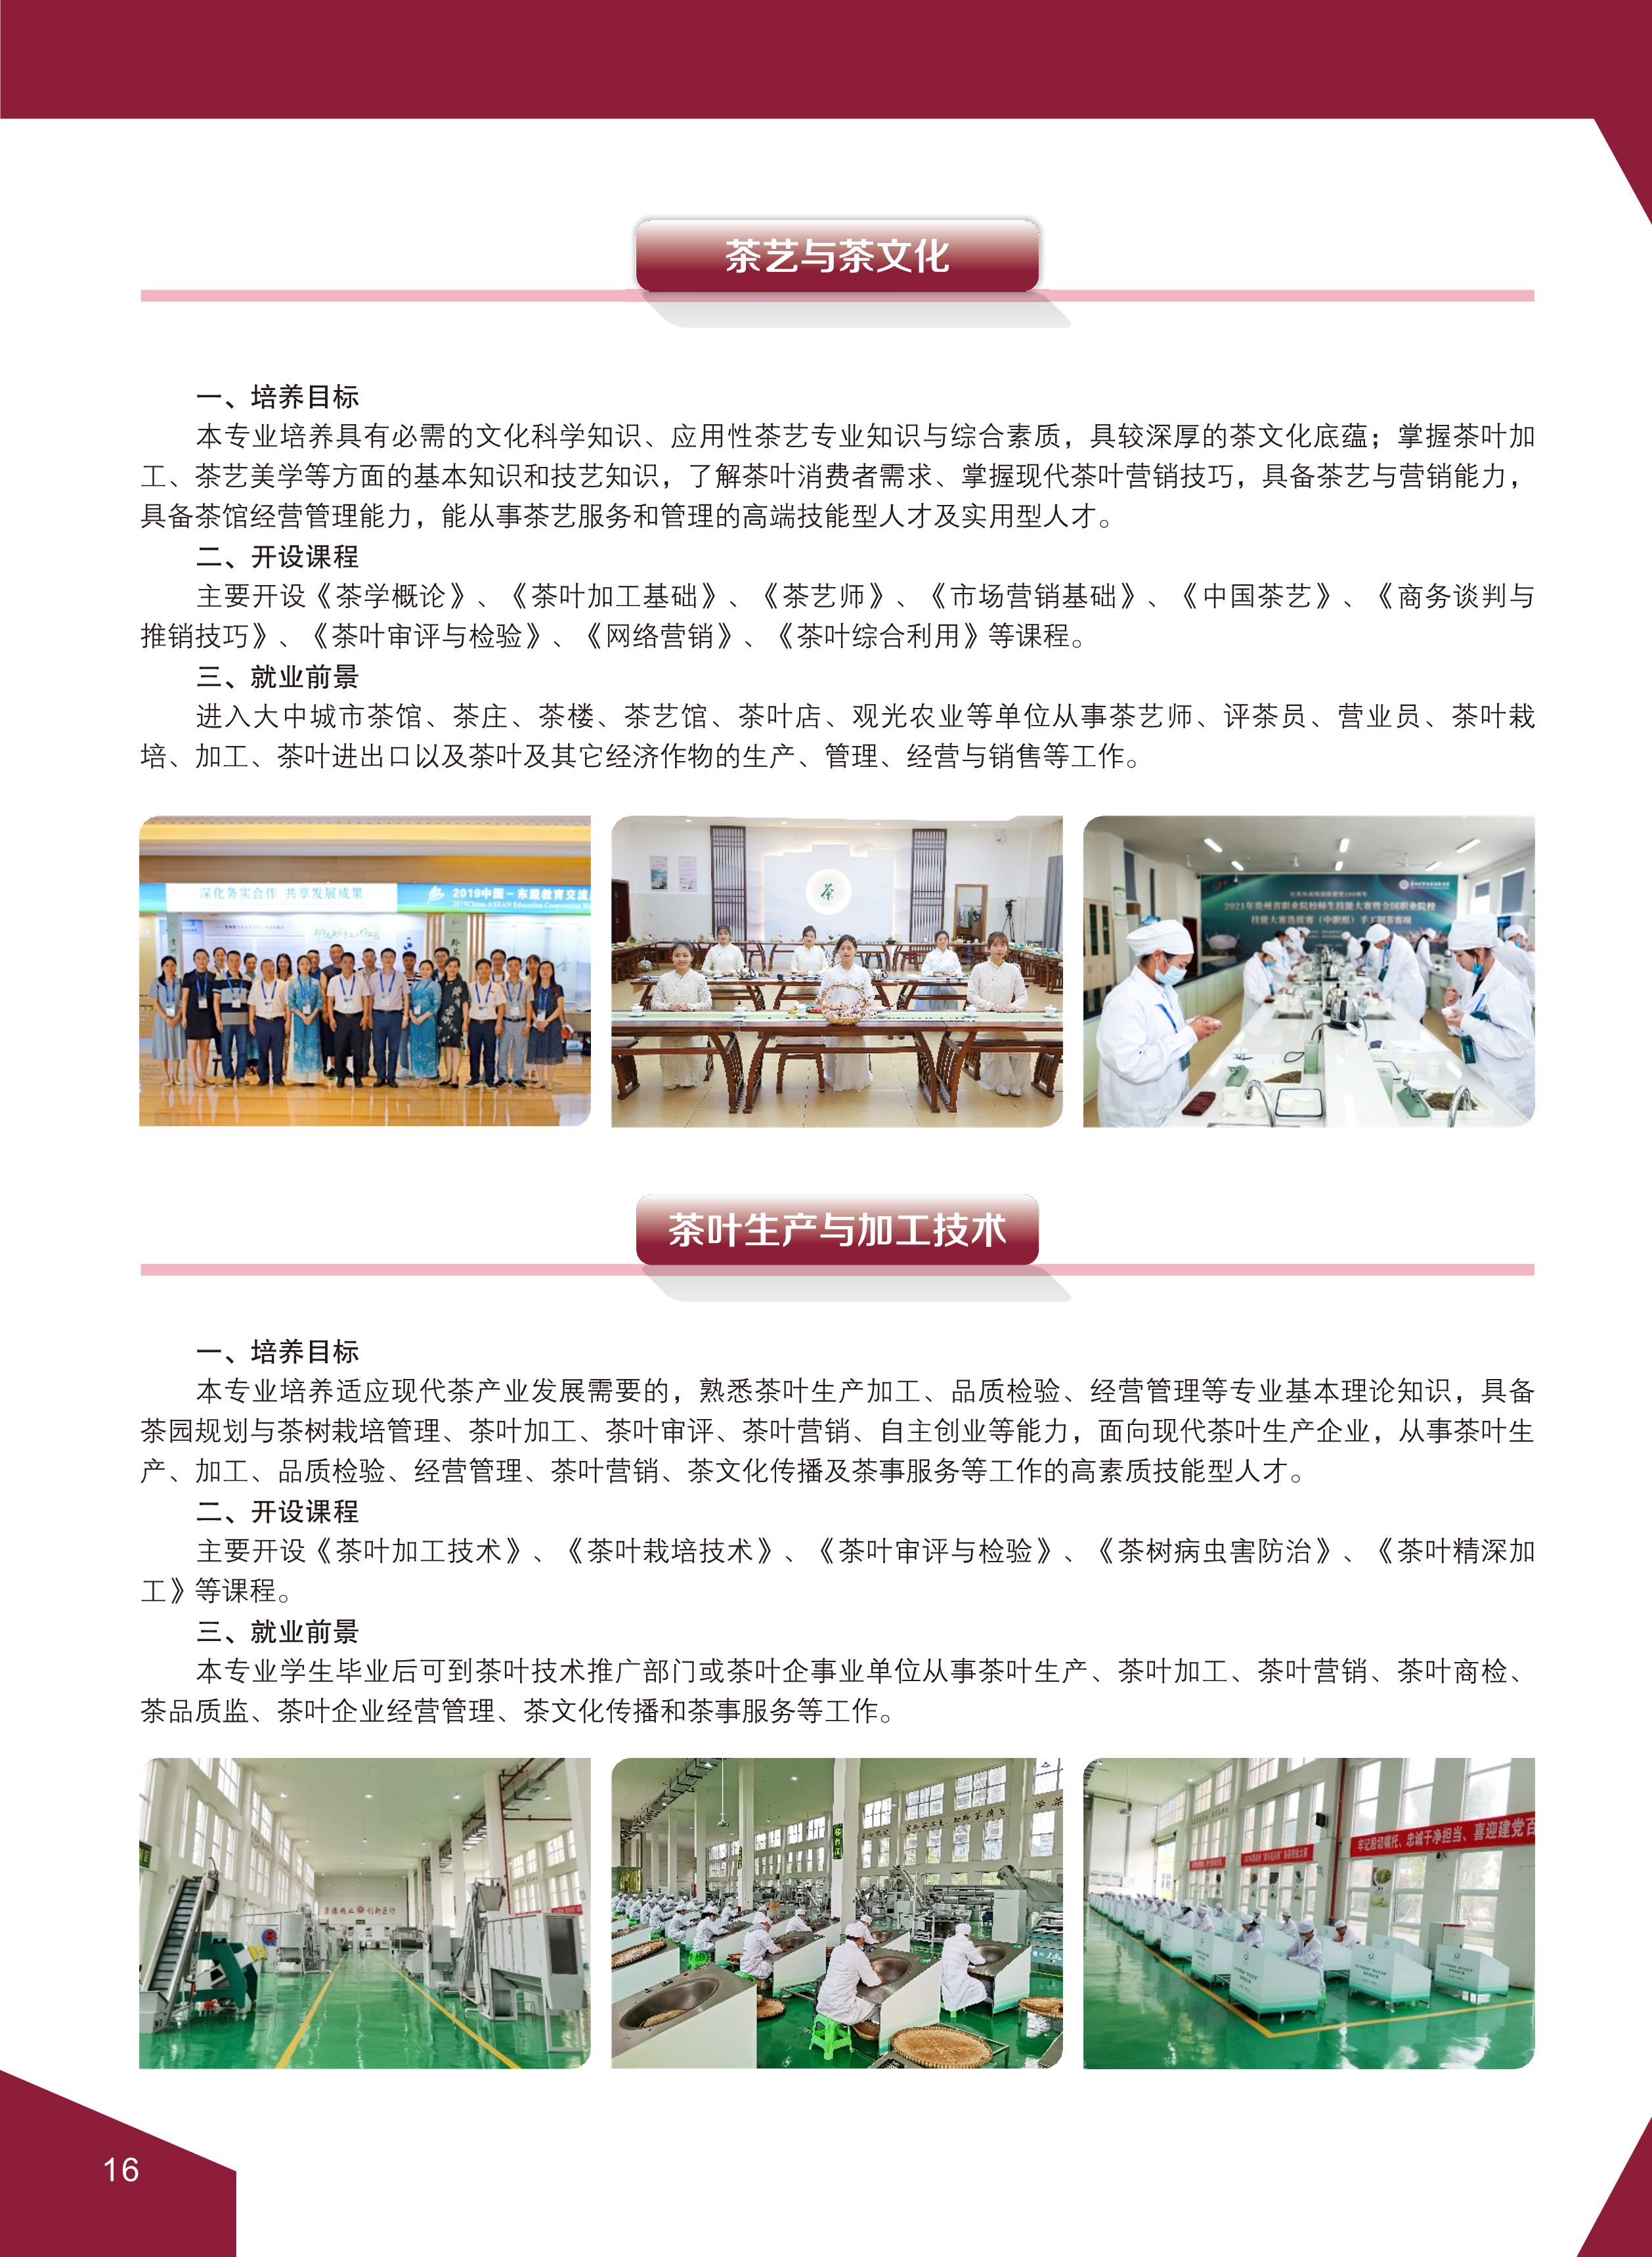 2贵州经贸职业技术学院 高考招生宣传简章_10.png